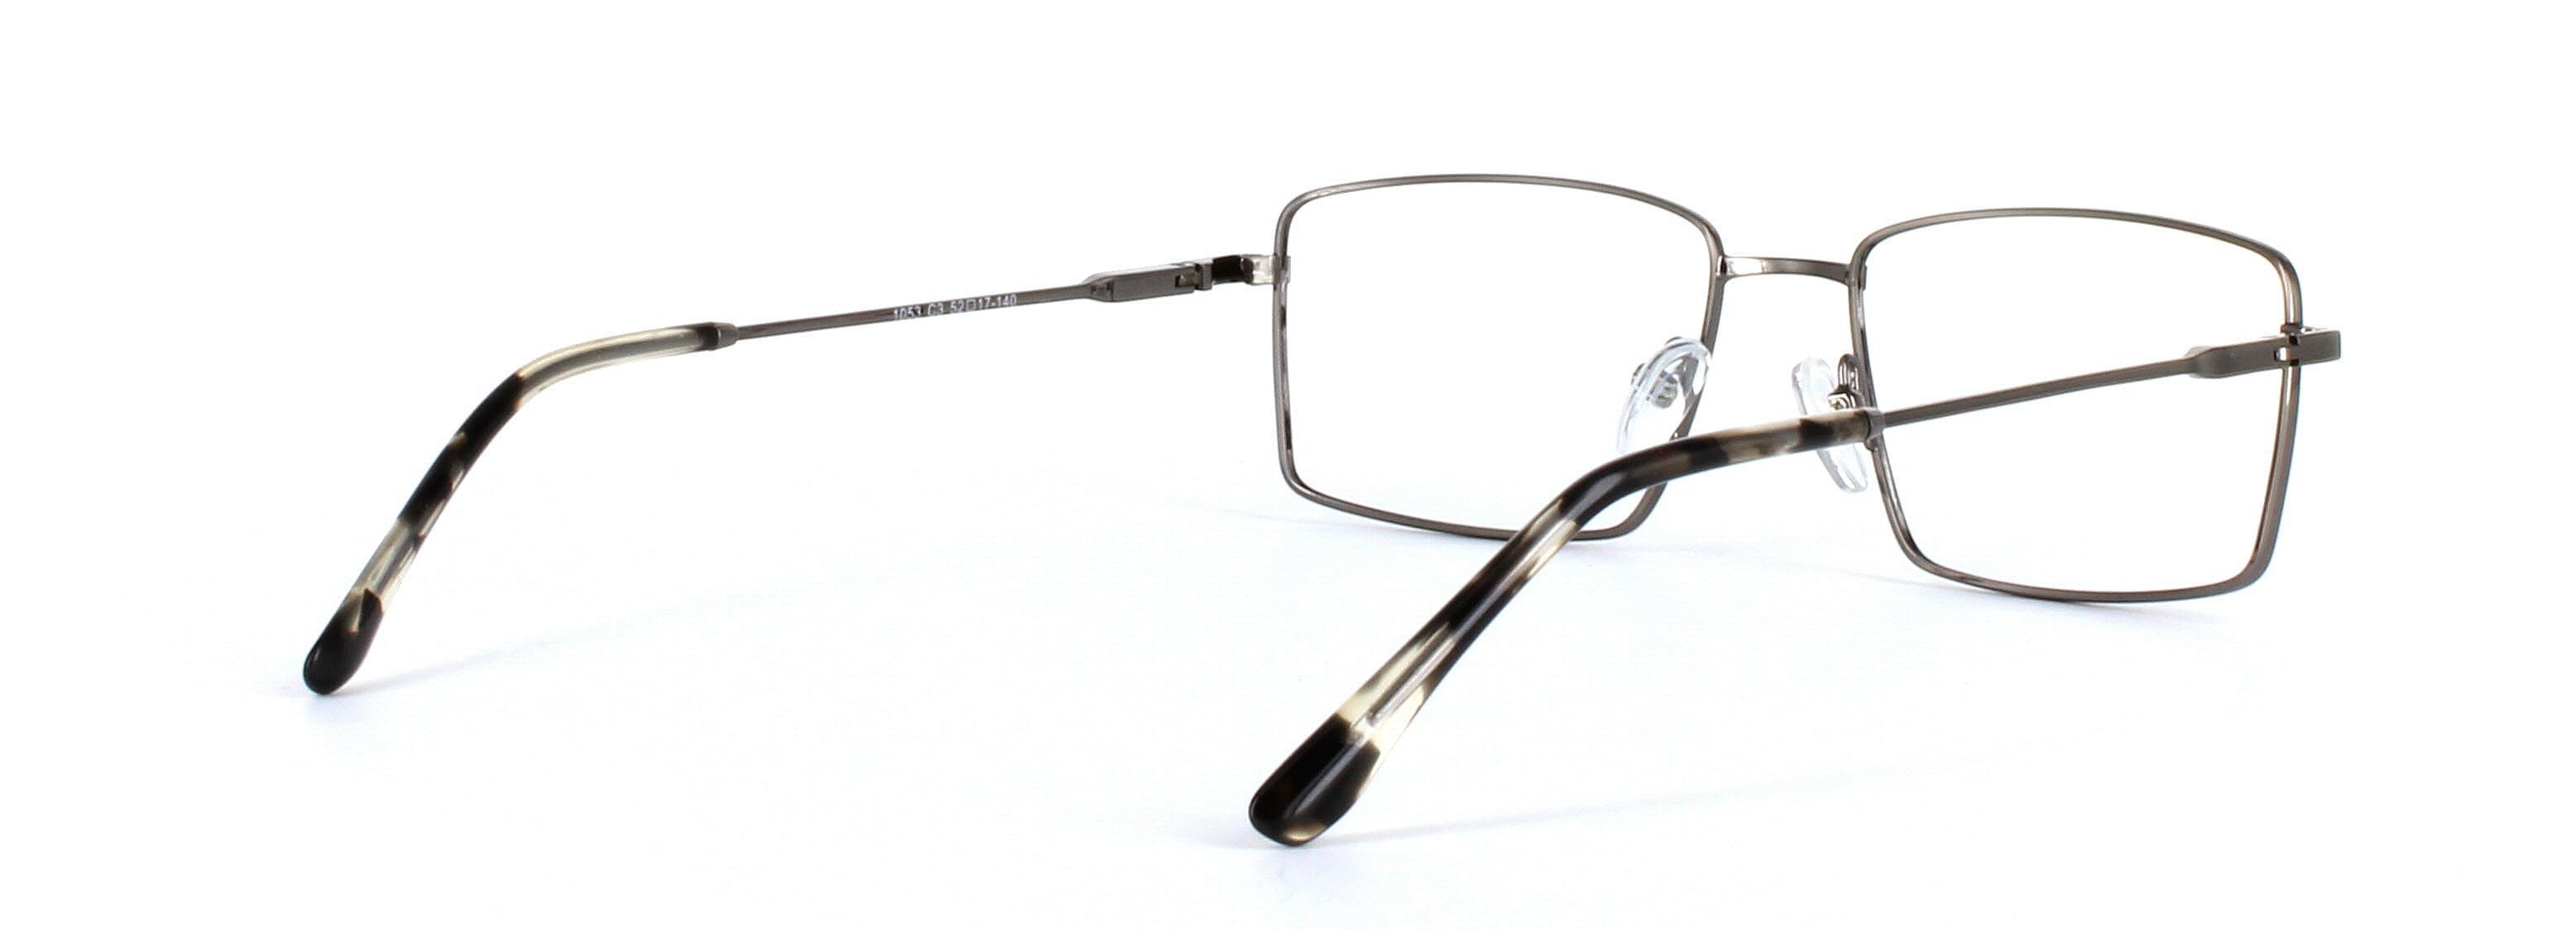 Catan Gunmetal Full Rim Rectangular Metal Glasses - Image View 4